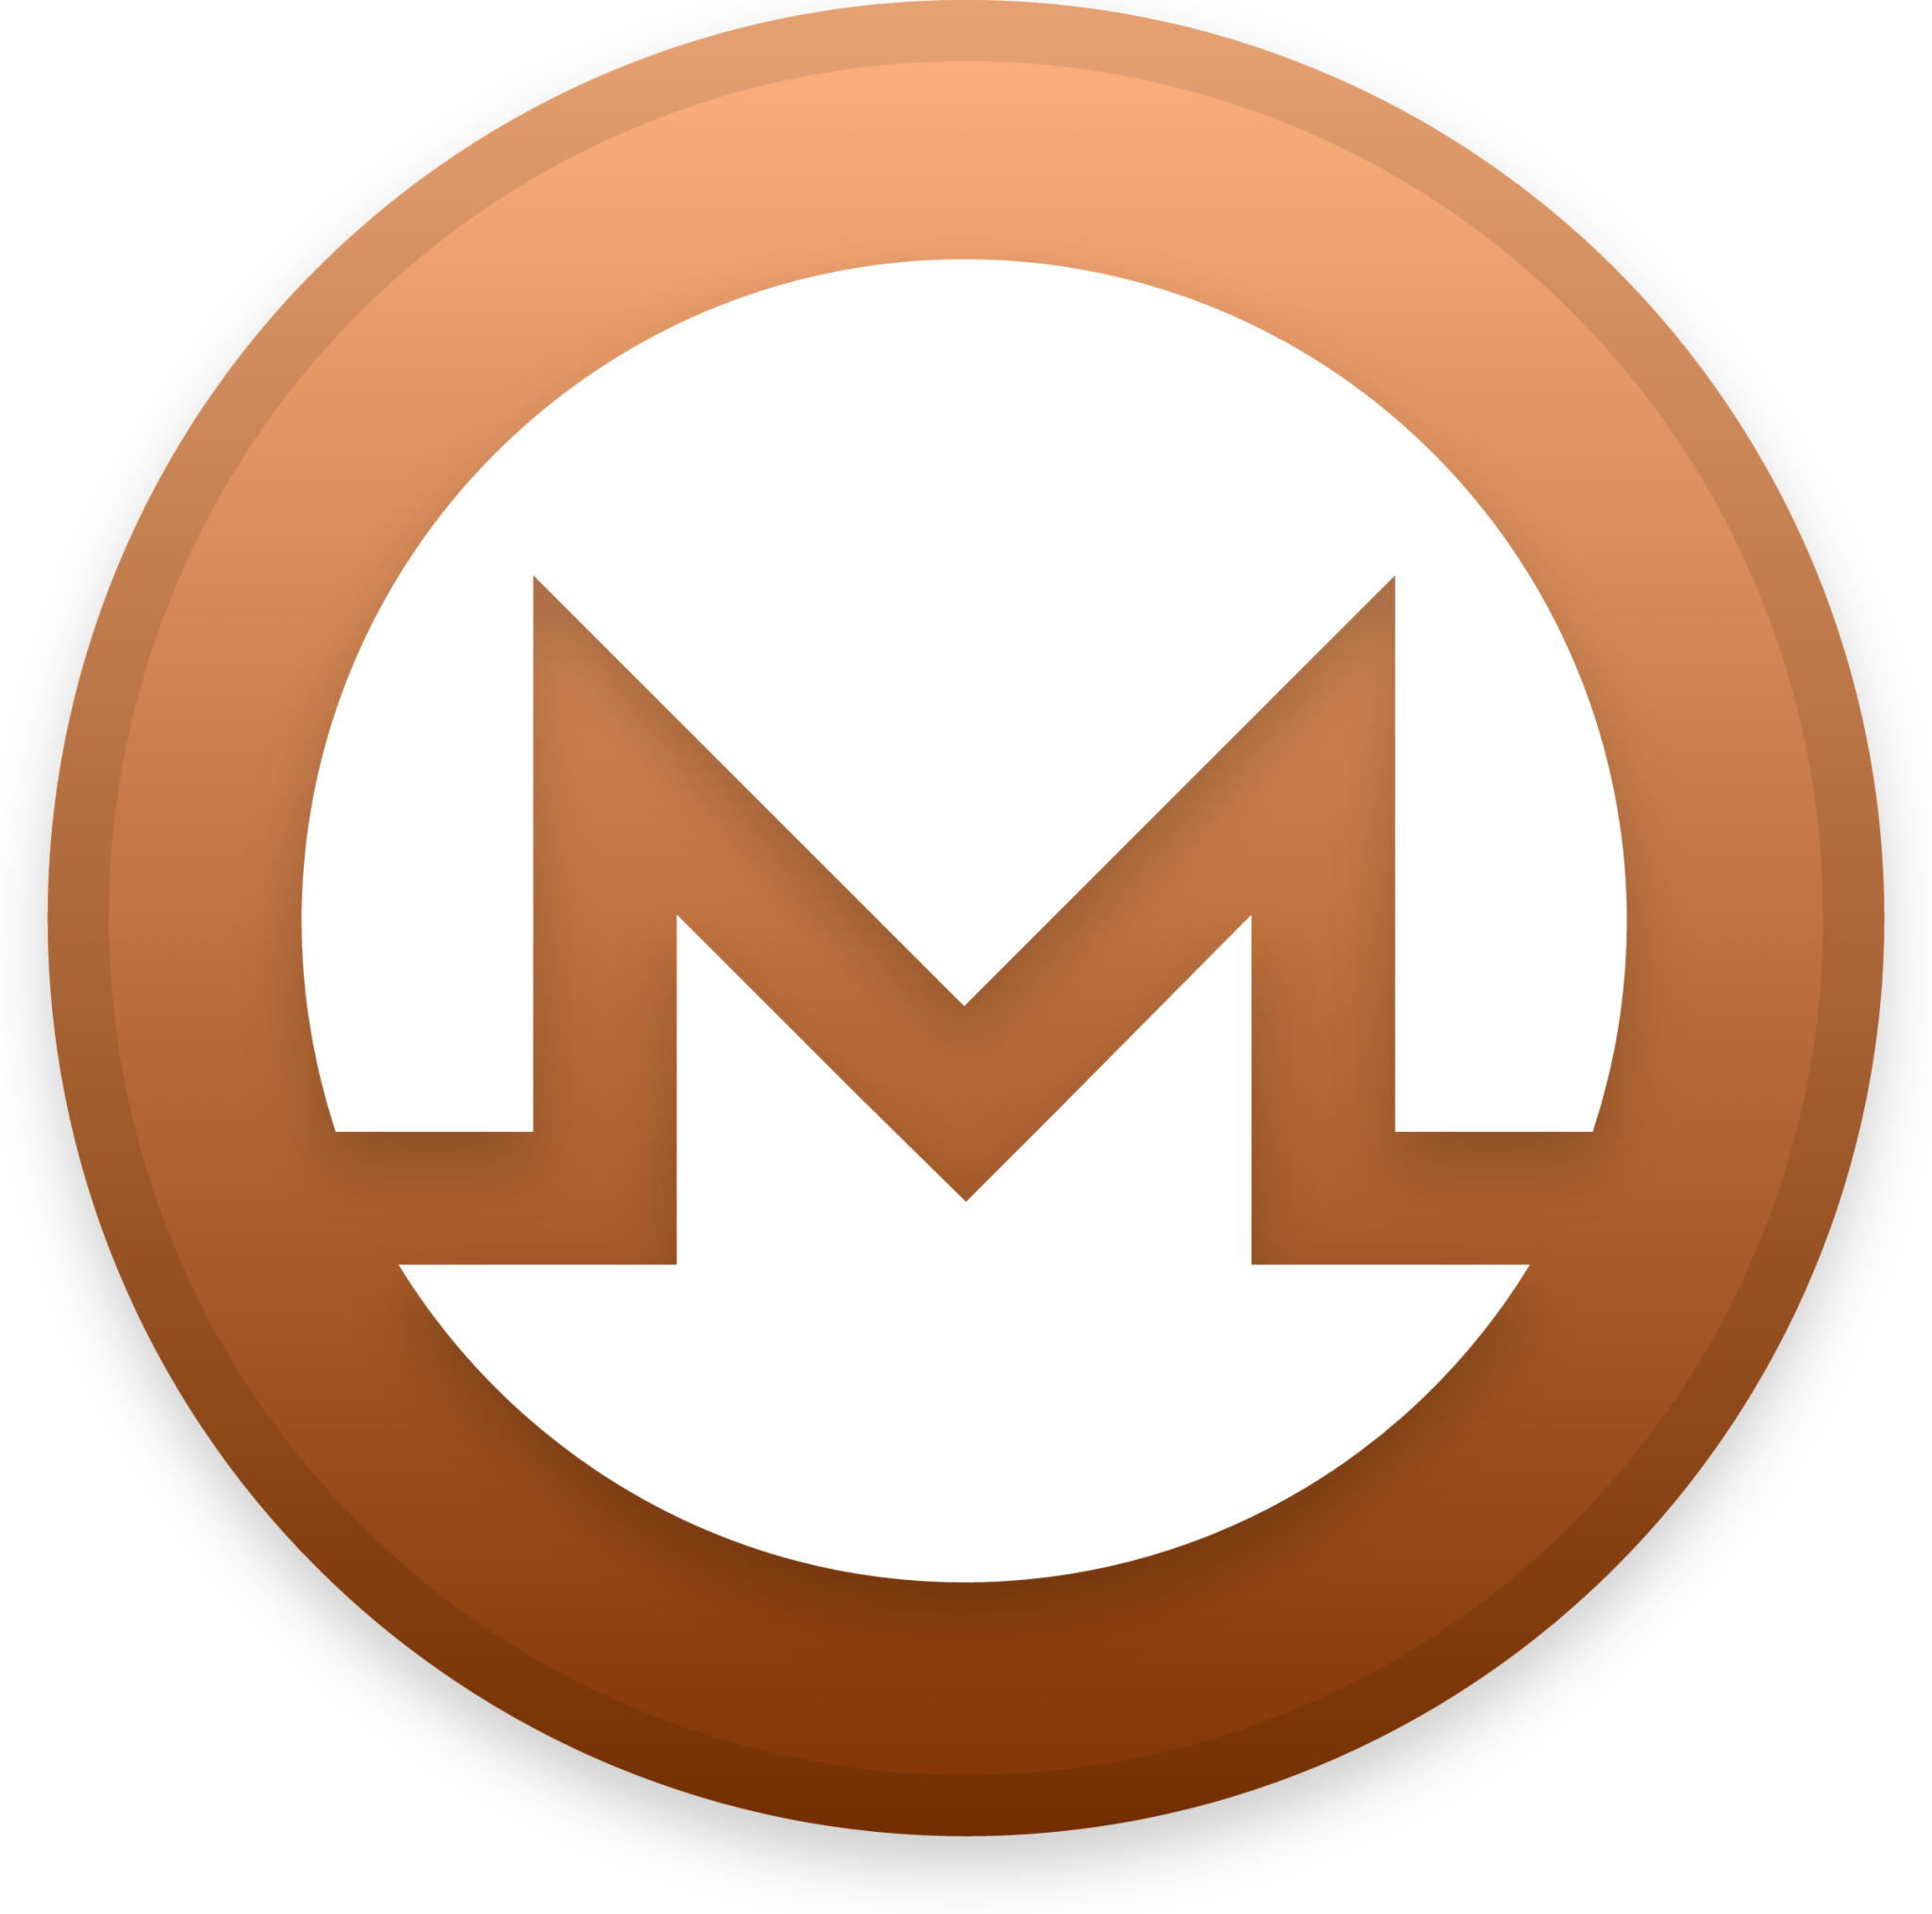 Monero Cryptocurrency icon